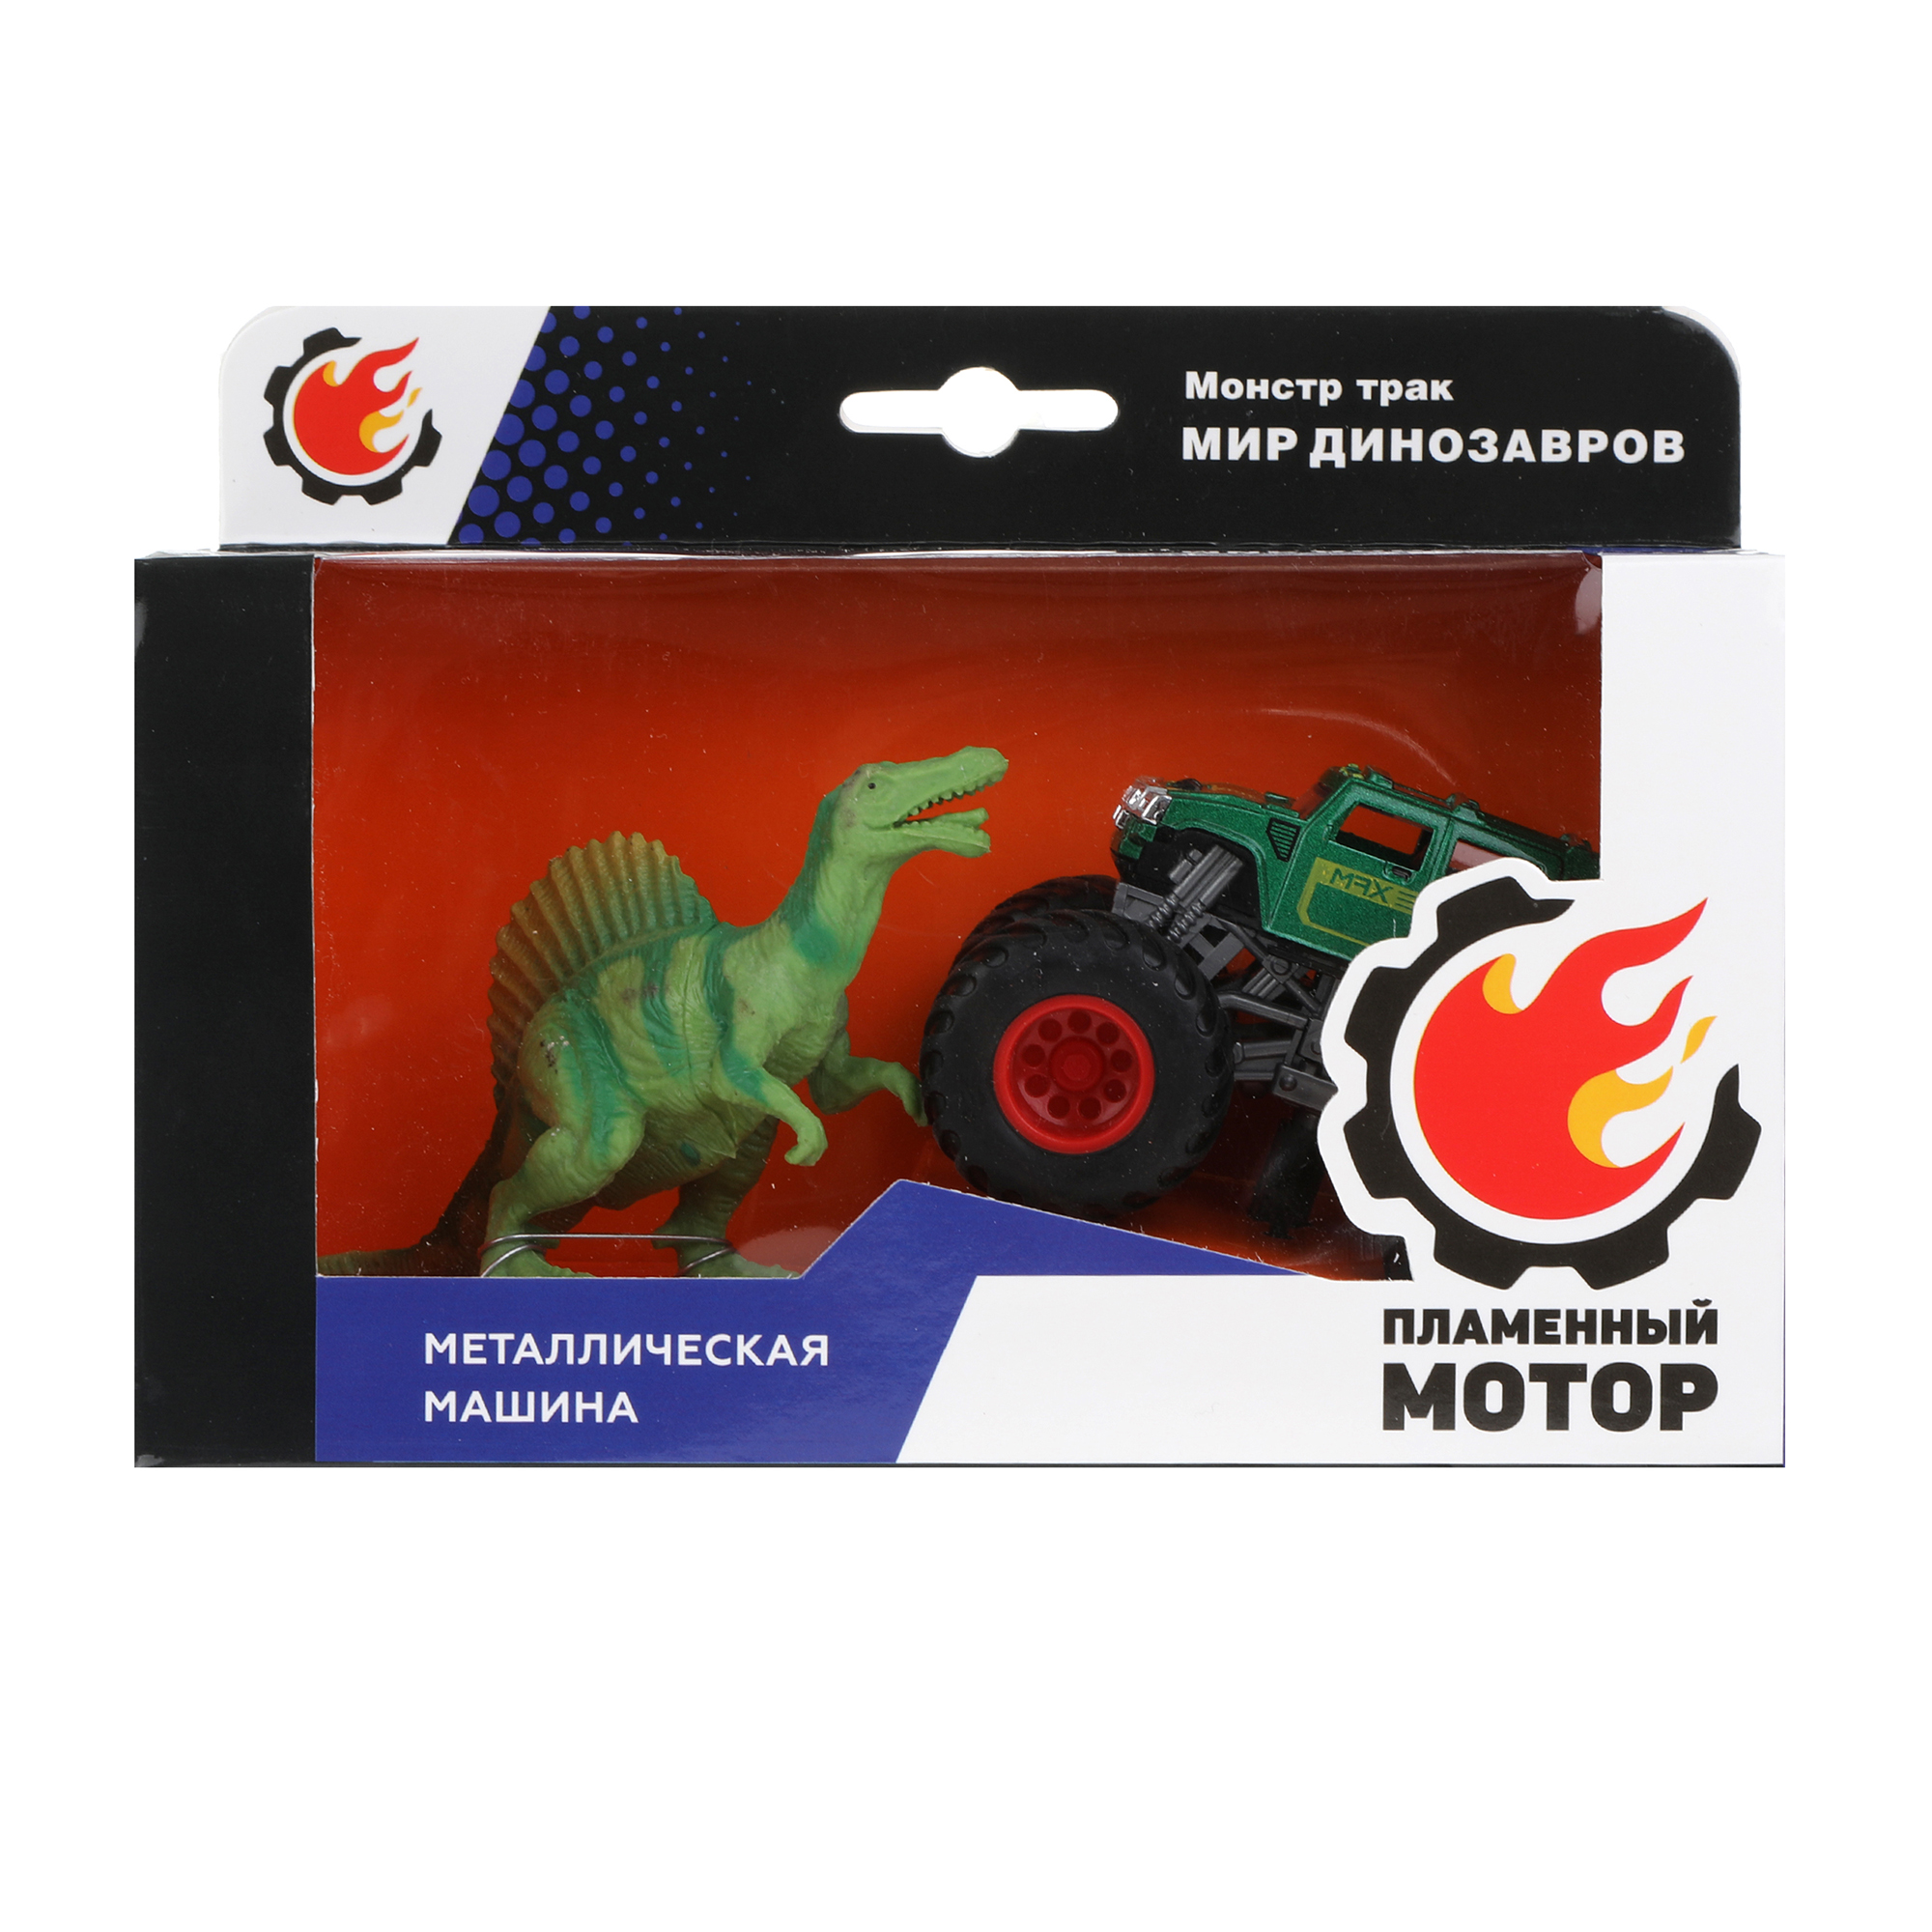 Машинка металлическая Пламенный мотор Монстр трак и фигурка динозавра 870531 - фото 4